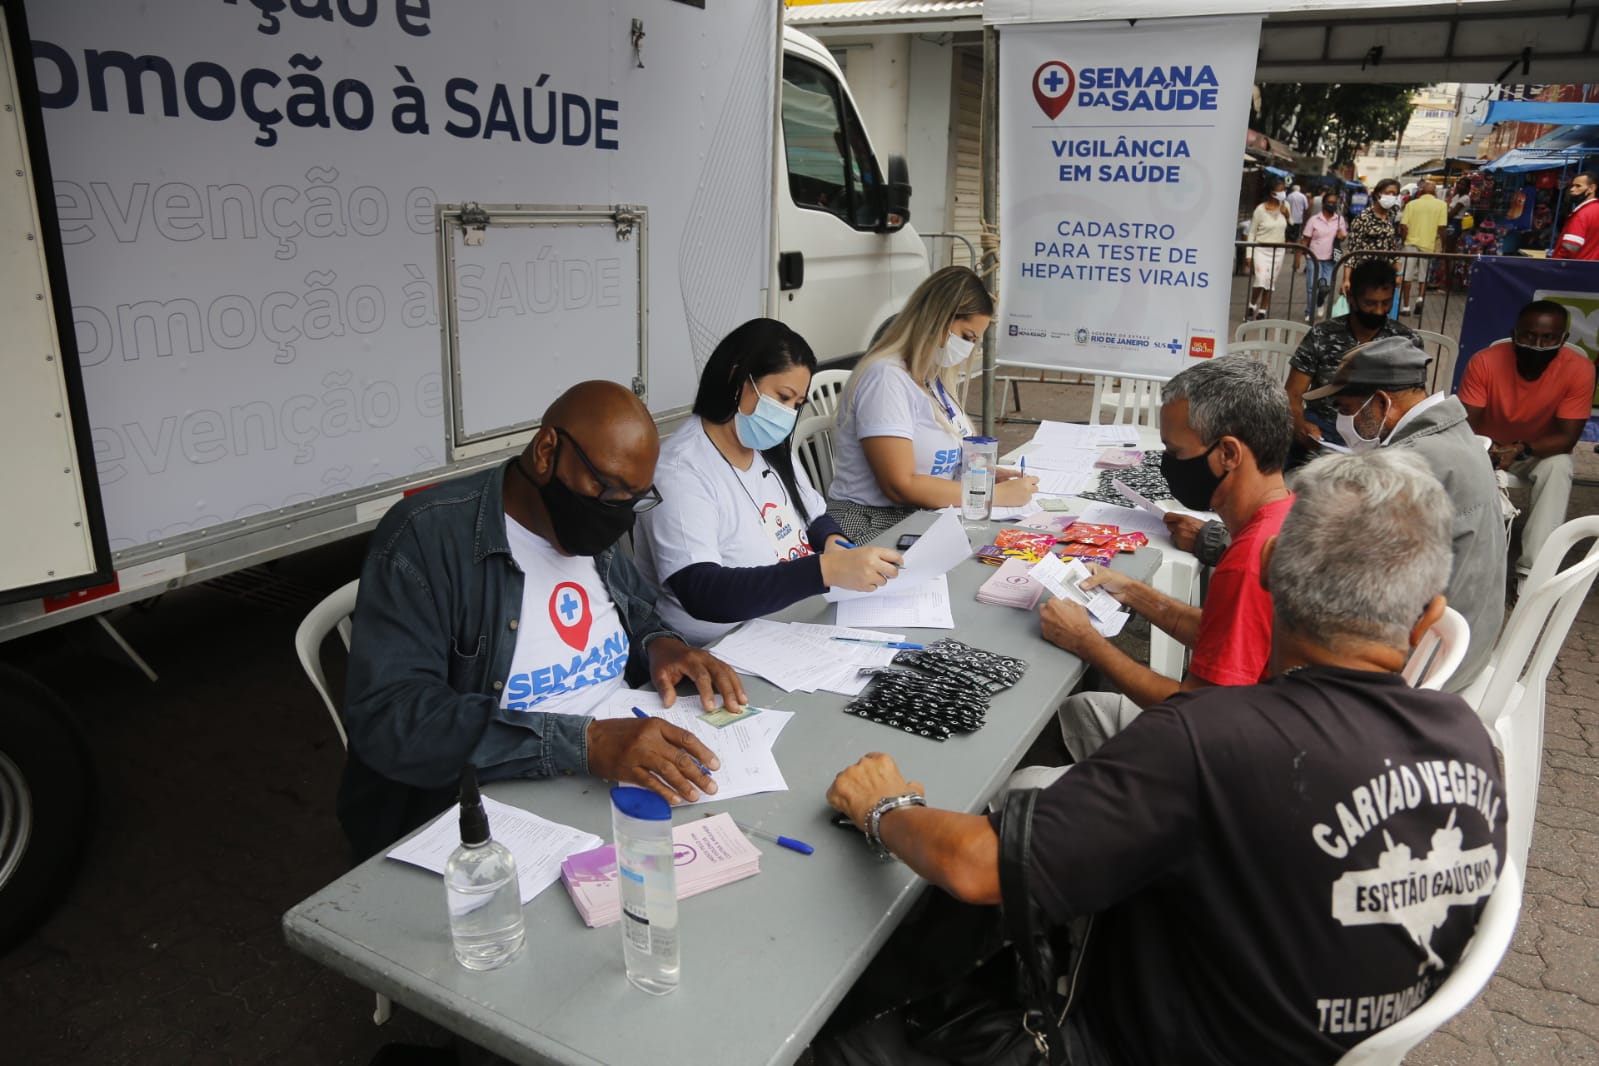 Semana da Saúde realiza mais uma edição no Centro do Rio